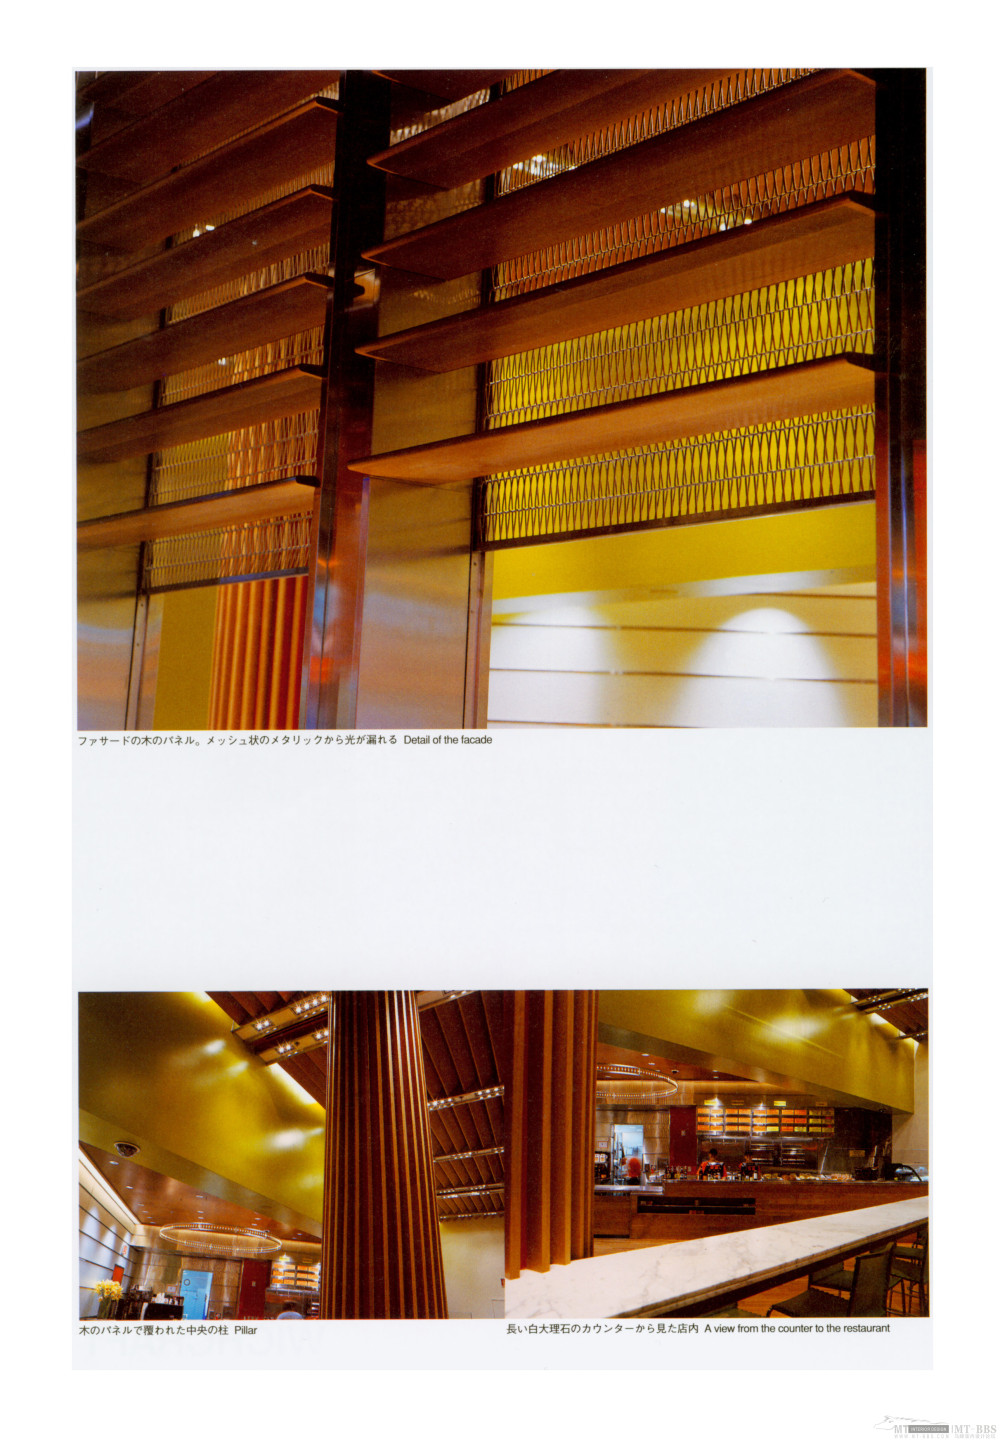 世界酒吧与餐厅(超大图)_050.jpg